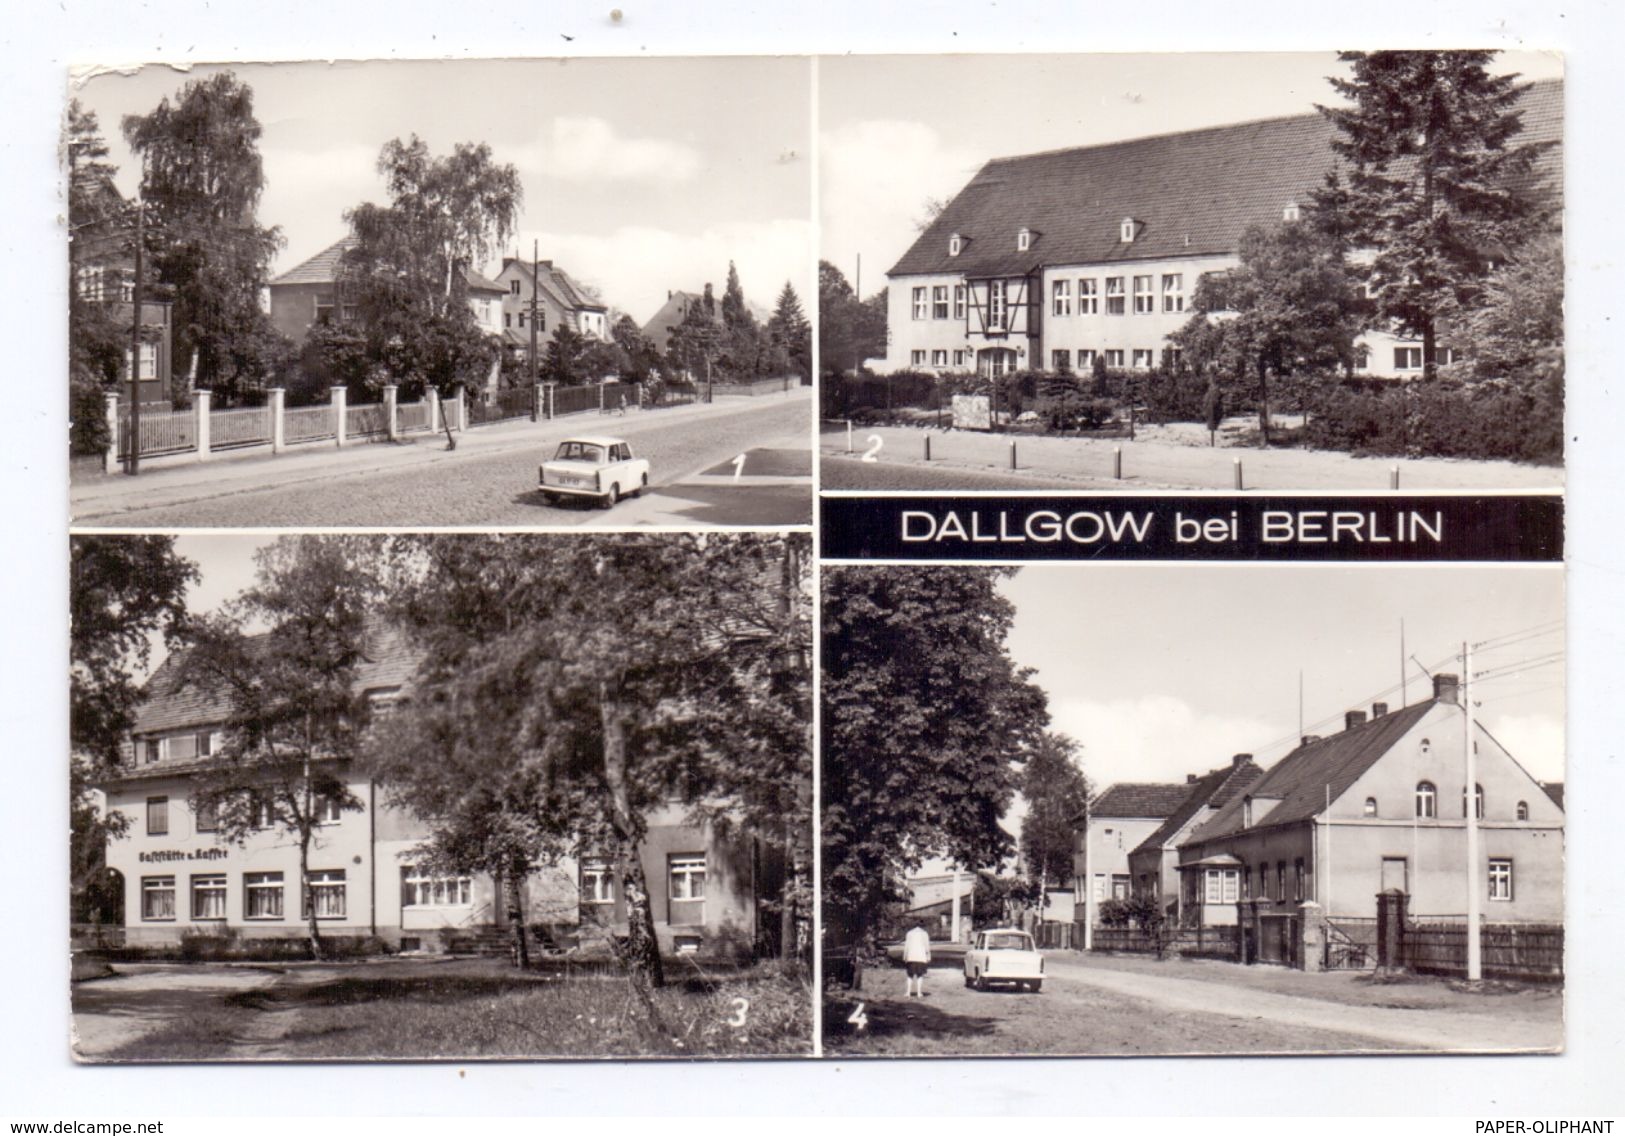 0-1543 DALLGOW, Thälmann-Strasse, Polytechn. Oberschule, Seegefelder Strasse, Märkischer Platz - Dallgow-Doeberitz